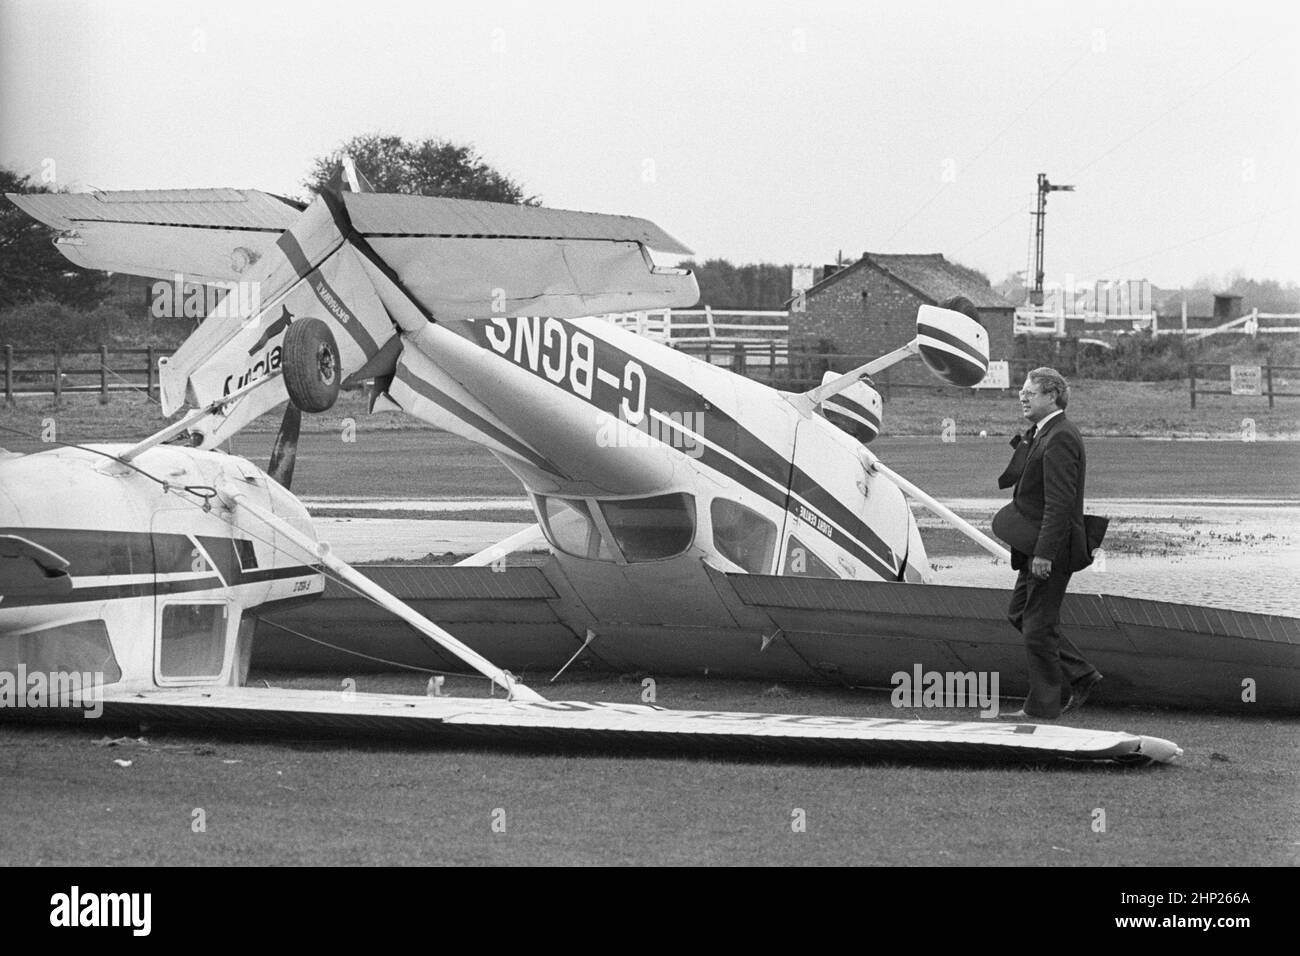 Photo du dossier datée du 16/10/1987 de deux des 27 avions légers de l'aéroport de Shoreham qui ont été endommagés après la grande tempête de 1987. Date de publication : vendredi 18 février 2022. Banque D'Images